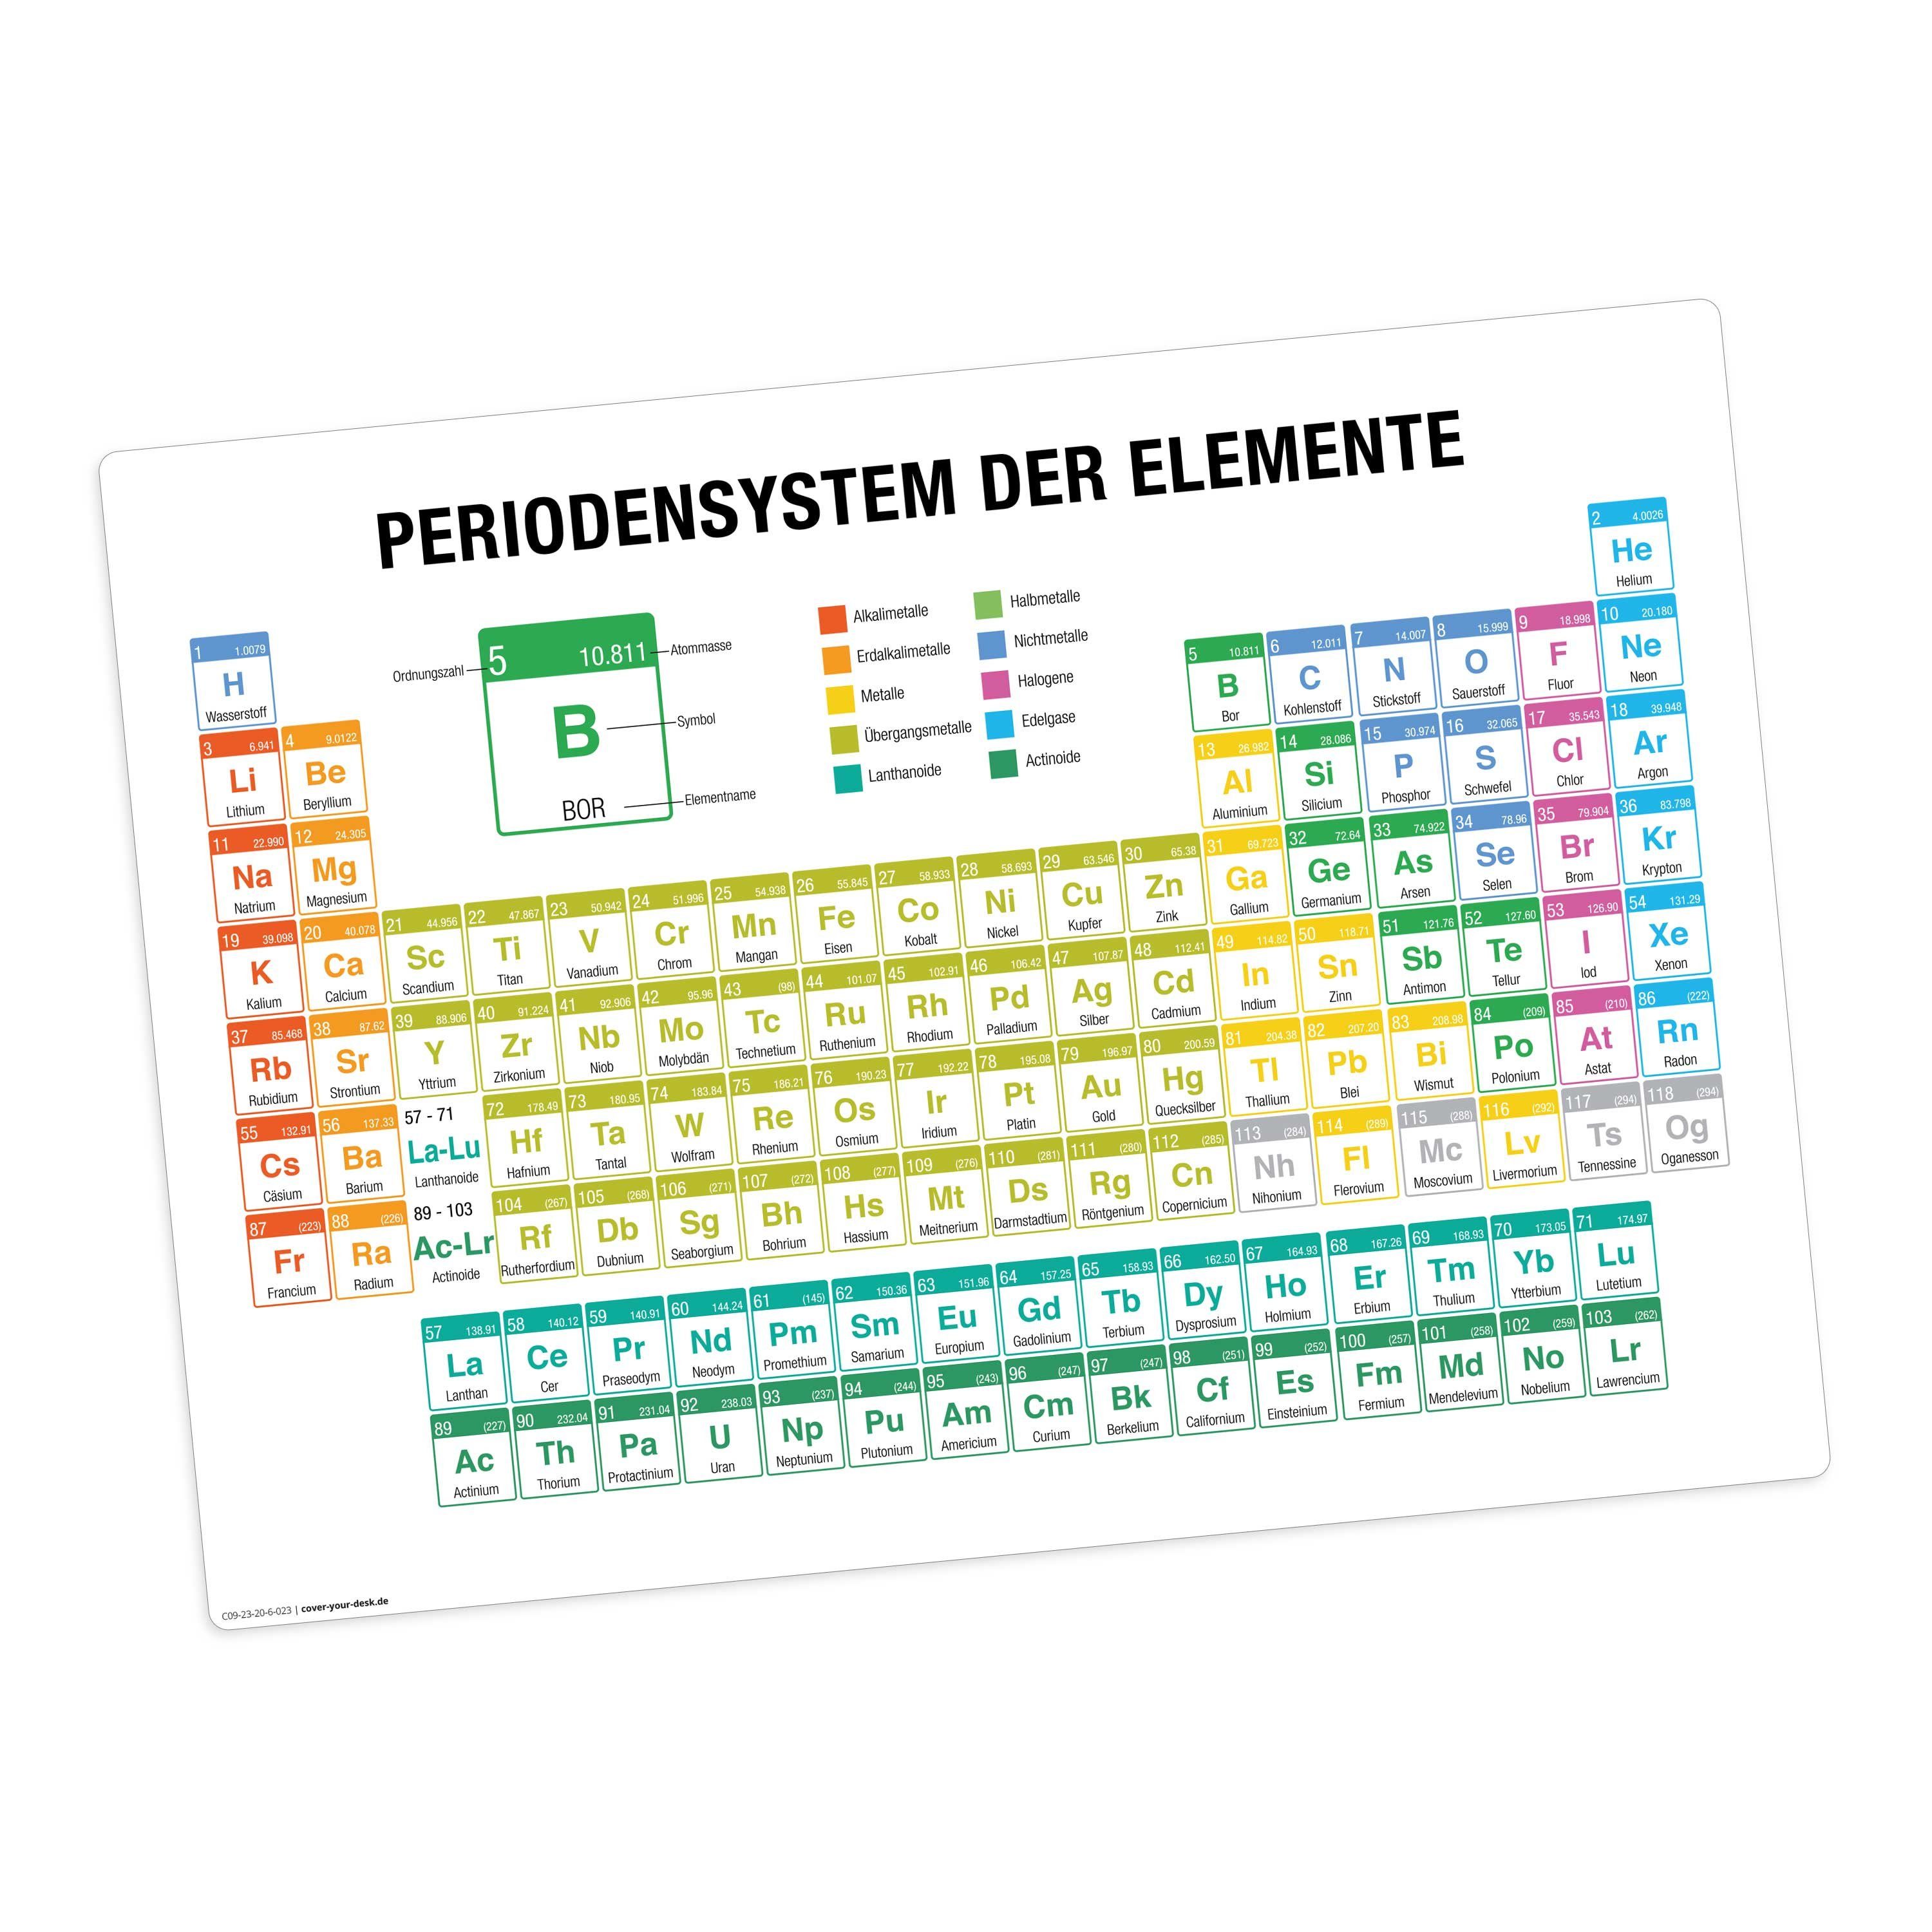 Tischsetmacher, 1-St., Made 44 / Vinyl, in abwaschbar Platzset, (aus cm - bunt), Germany der 32 Tischset, Elemente, Platzset erstklassigem Periodensystem x